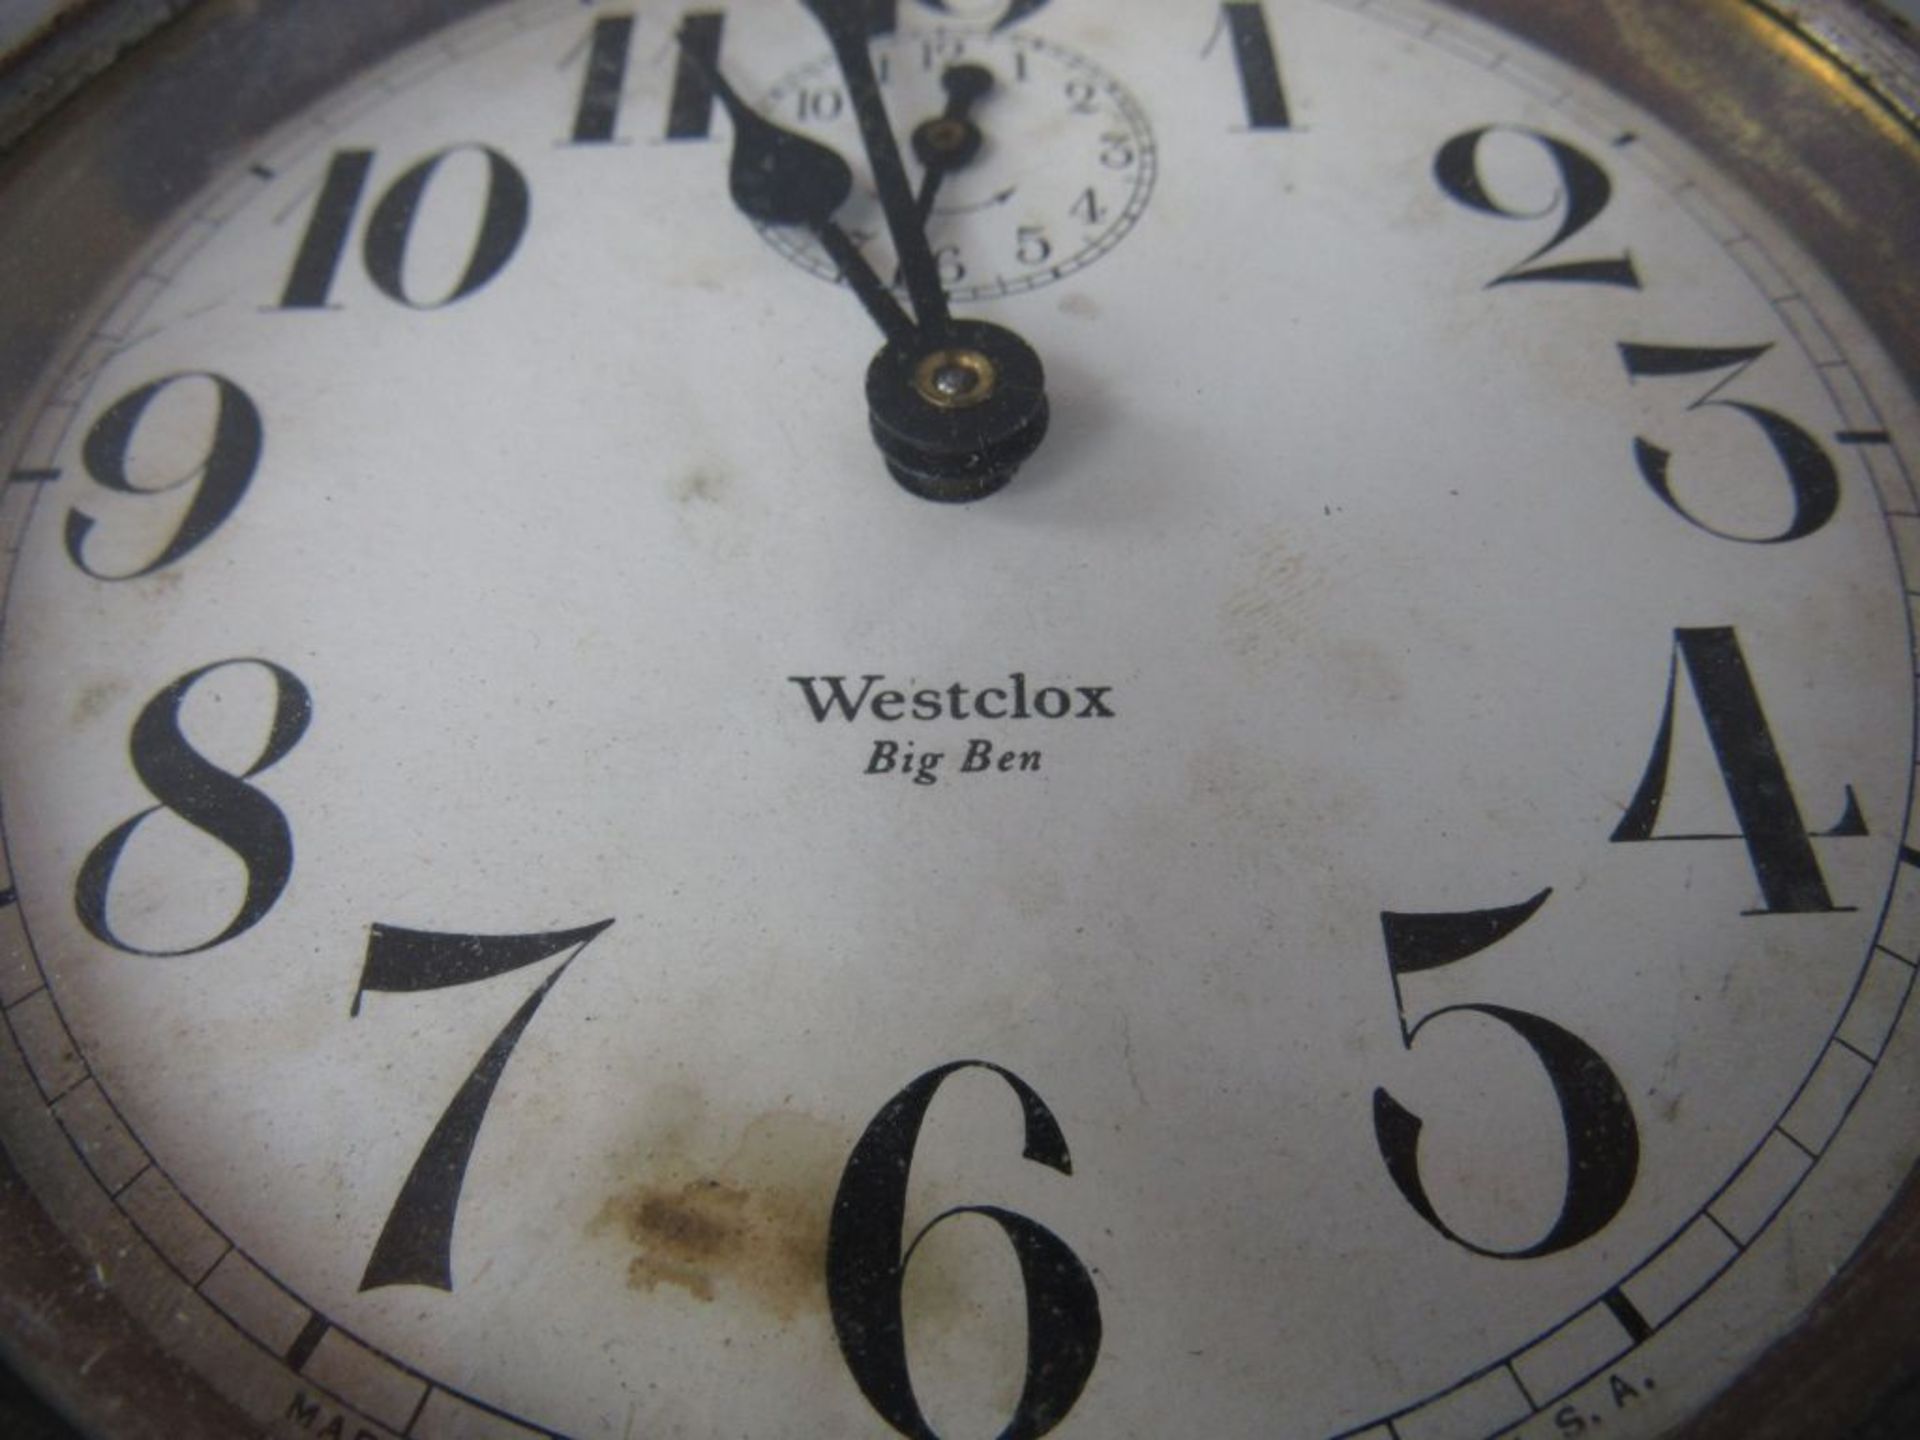 Uhr Westclox Big Ben um 1900 13,5cm Durchmesser - Image 2 of 6